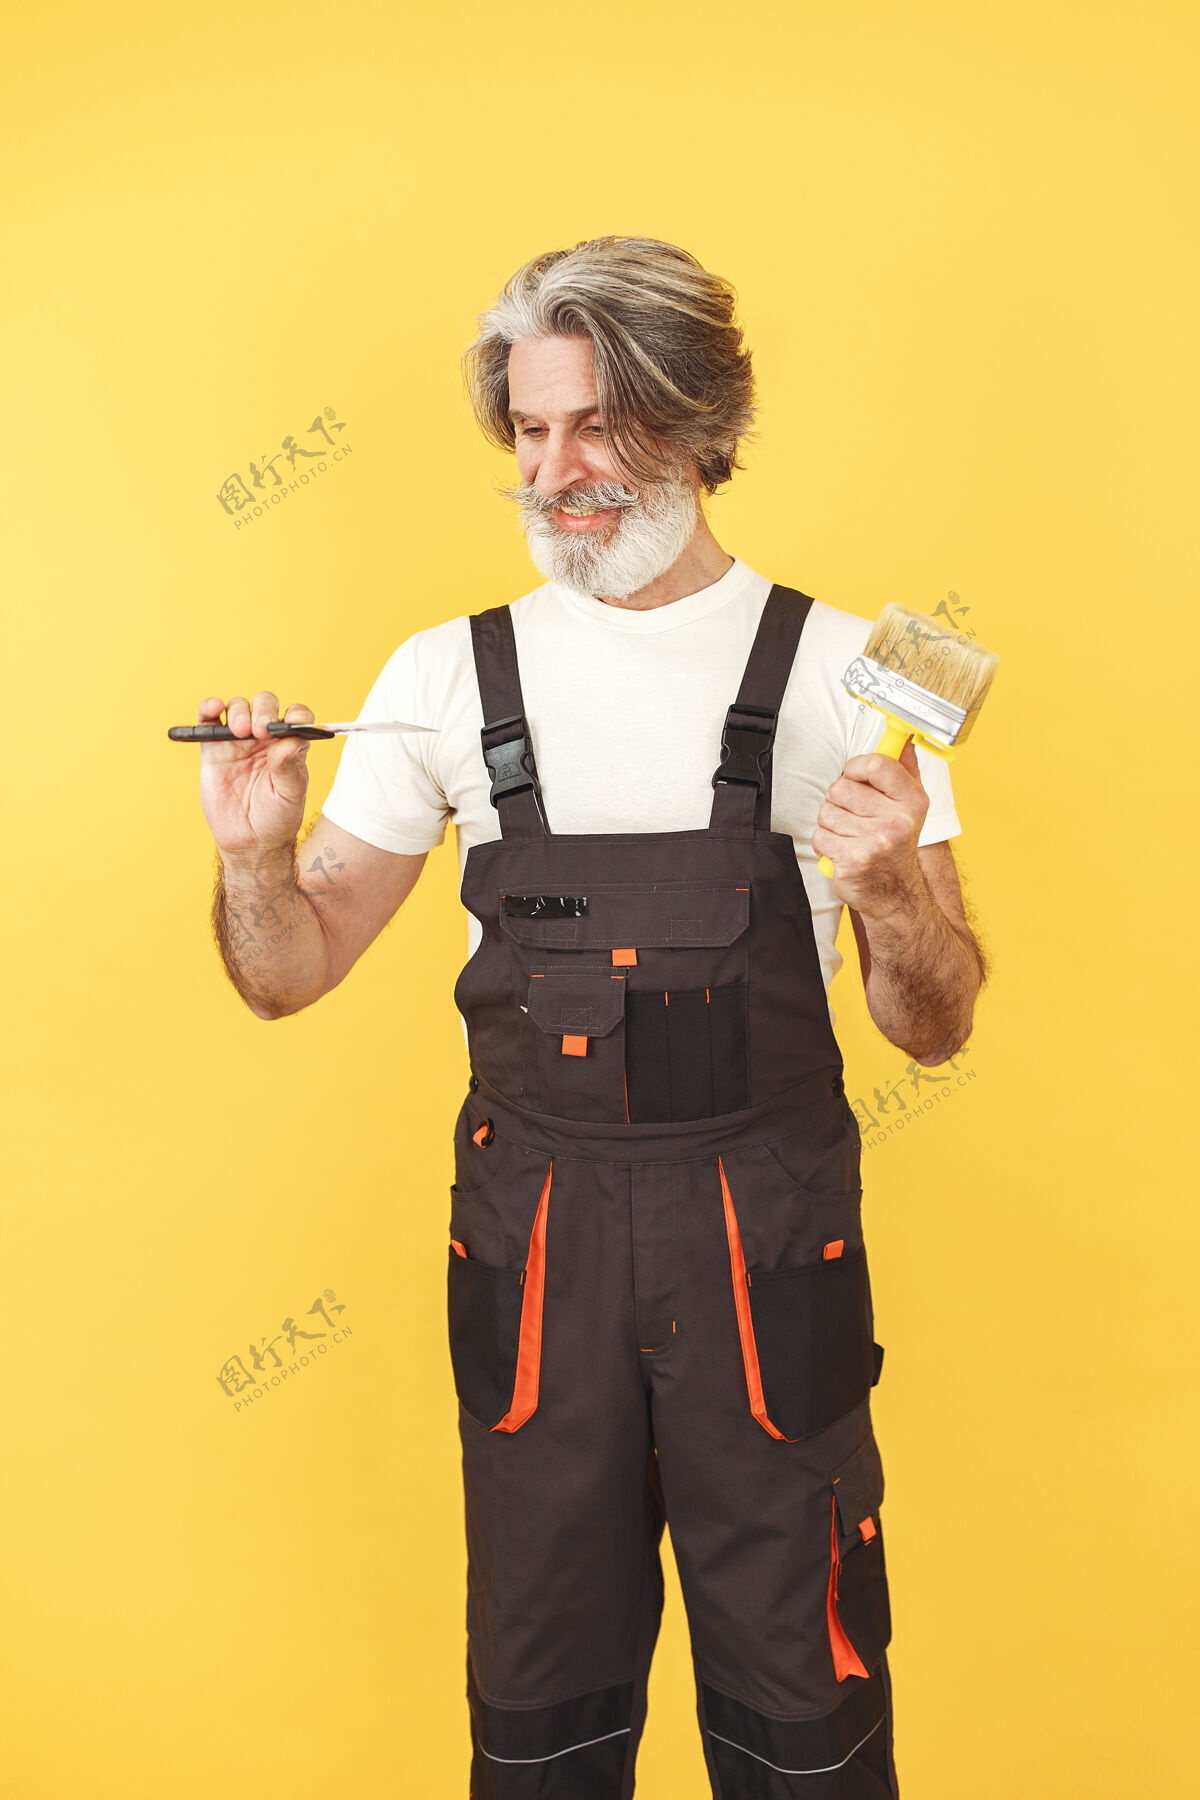 人穿工作服的工人 拿工具的人 拿抹刀的老人抹刀顾问技术员